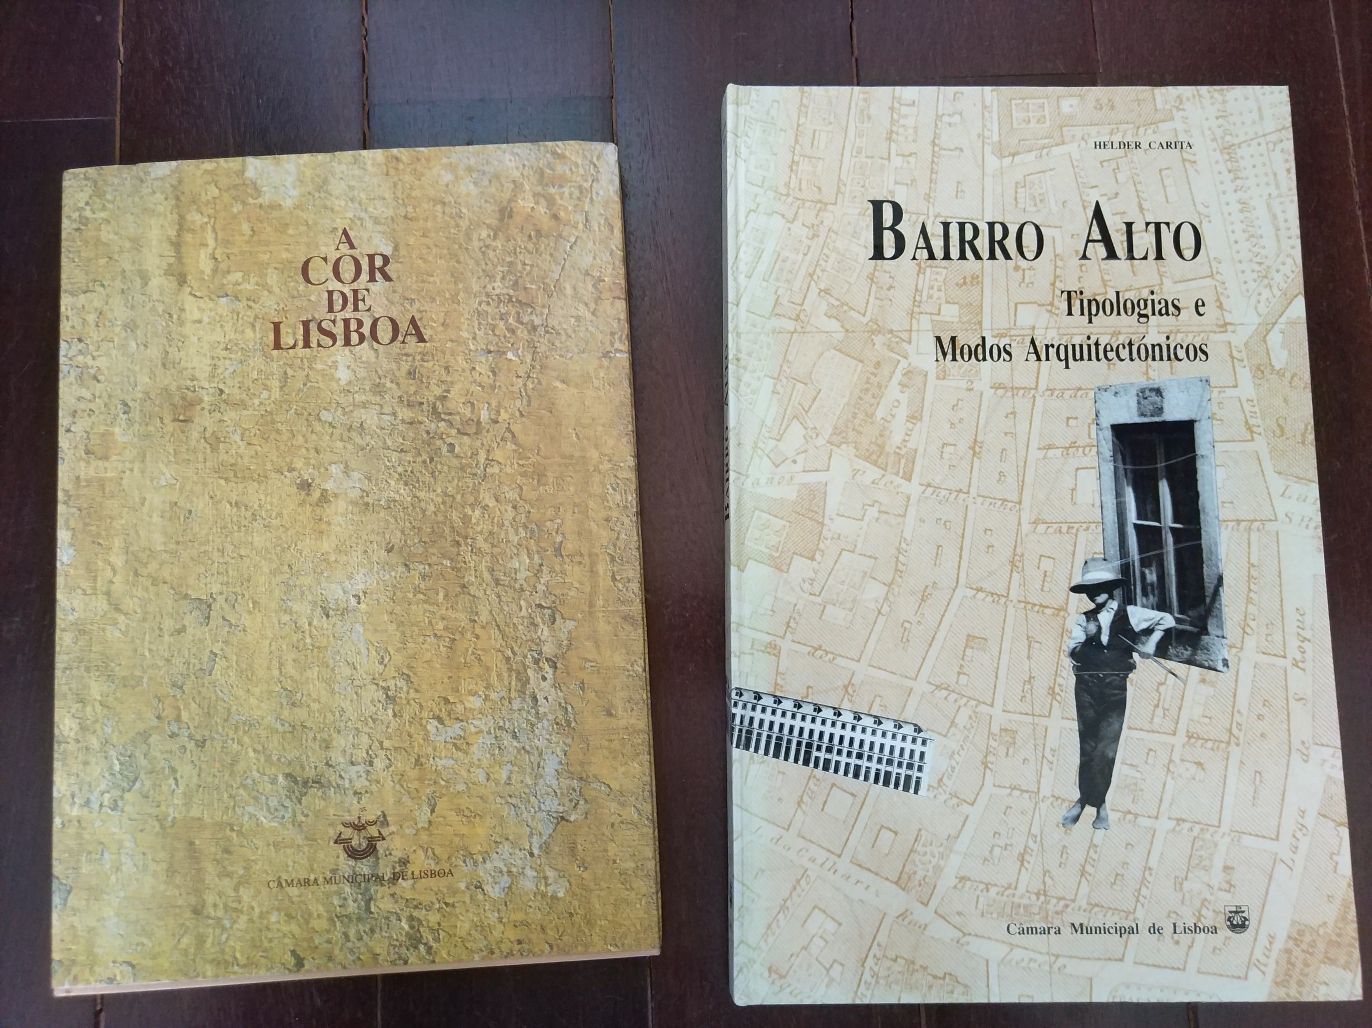 Livros A Cor de Lisboa e Bairro Alto